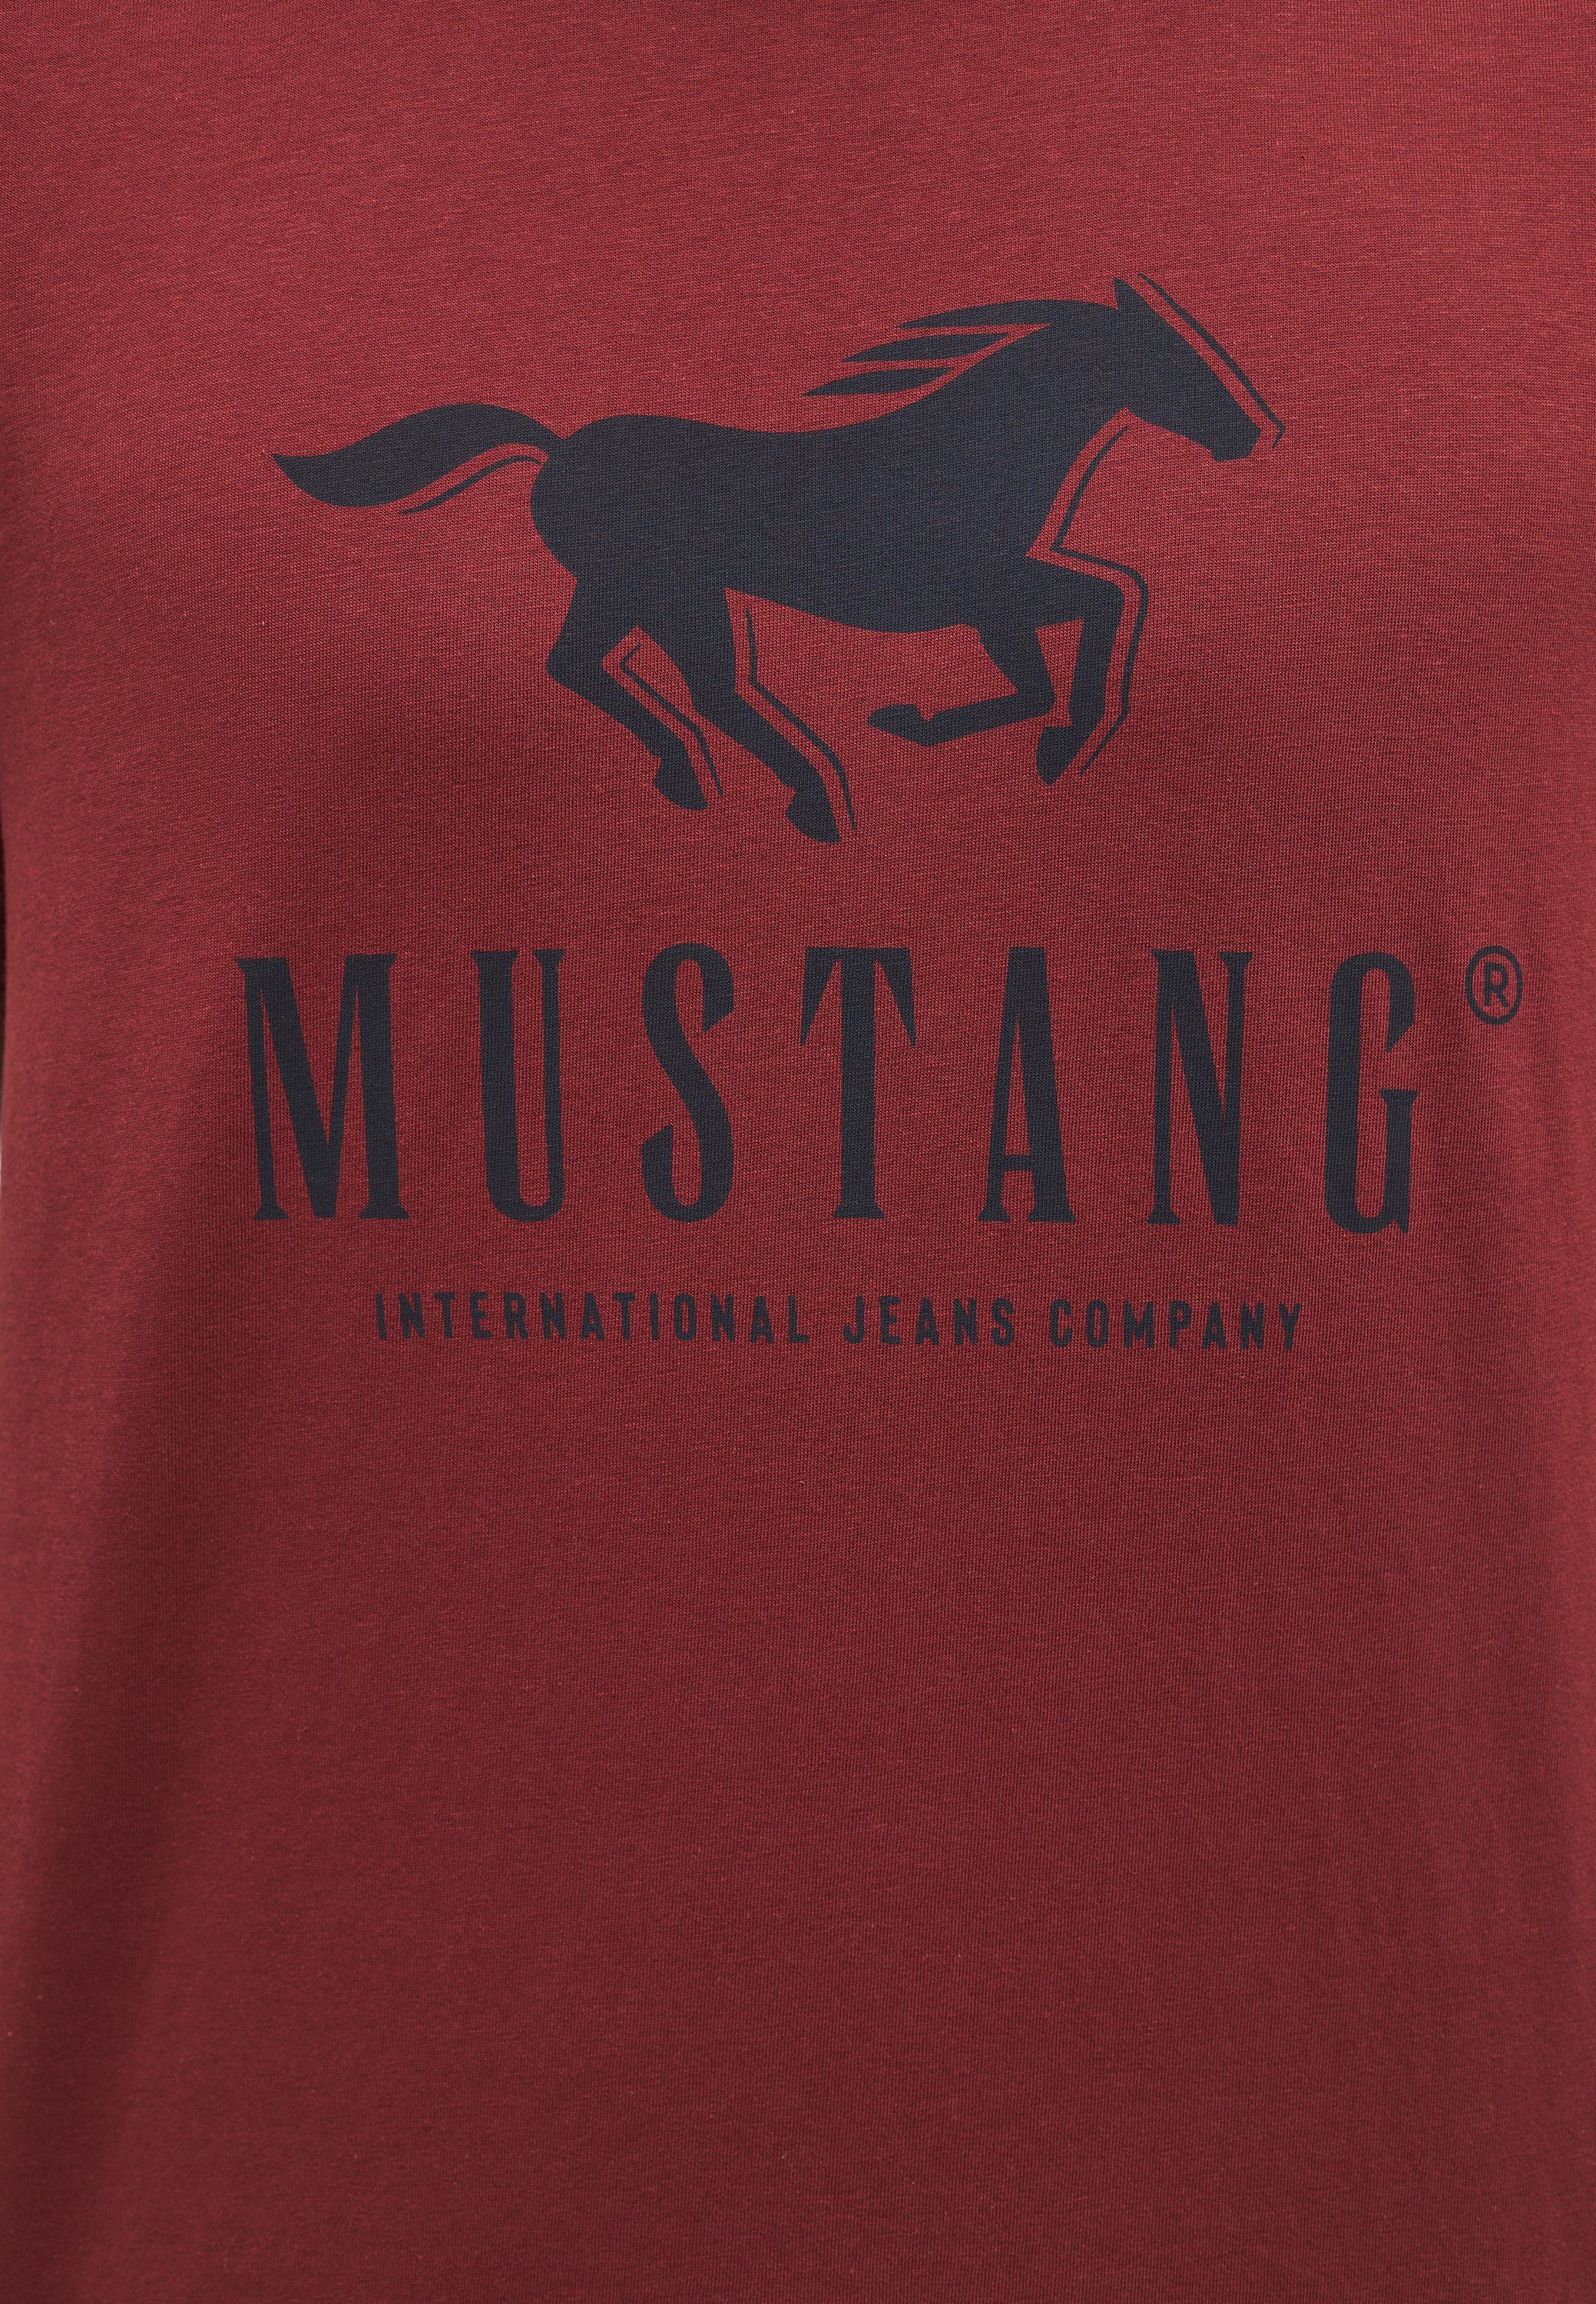 MUSTANG Mustang dunkelrot Kurzarmshirt Print-Shirt